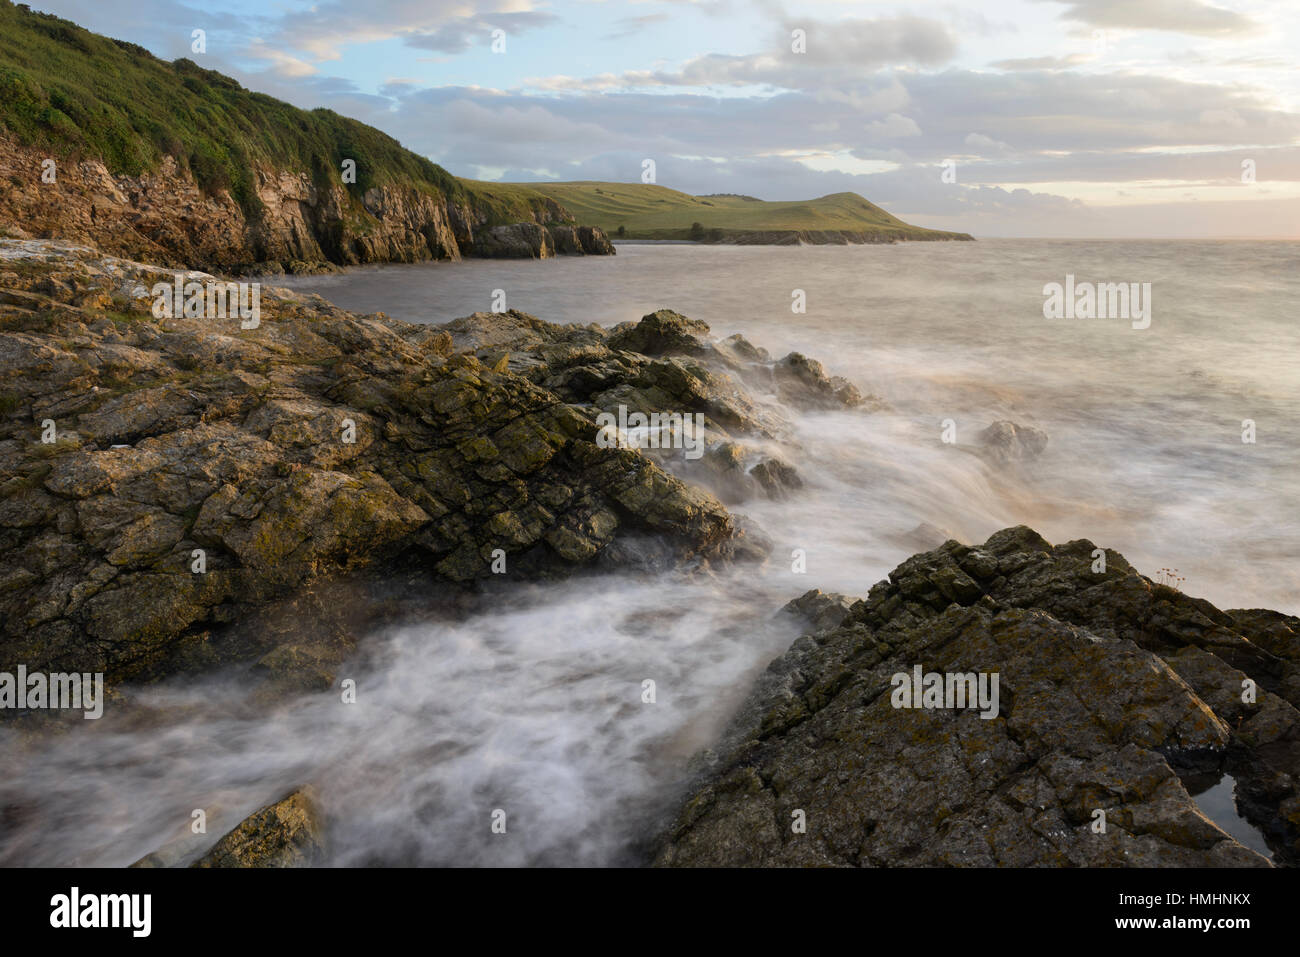 Lavage de la marée haute sur les rochers au milieu d'espoir près de Weston-Super-Mare, Somerset. Banque D'Images